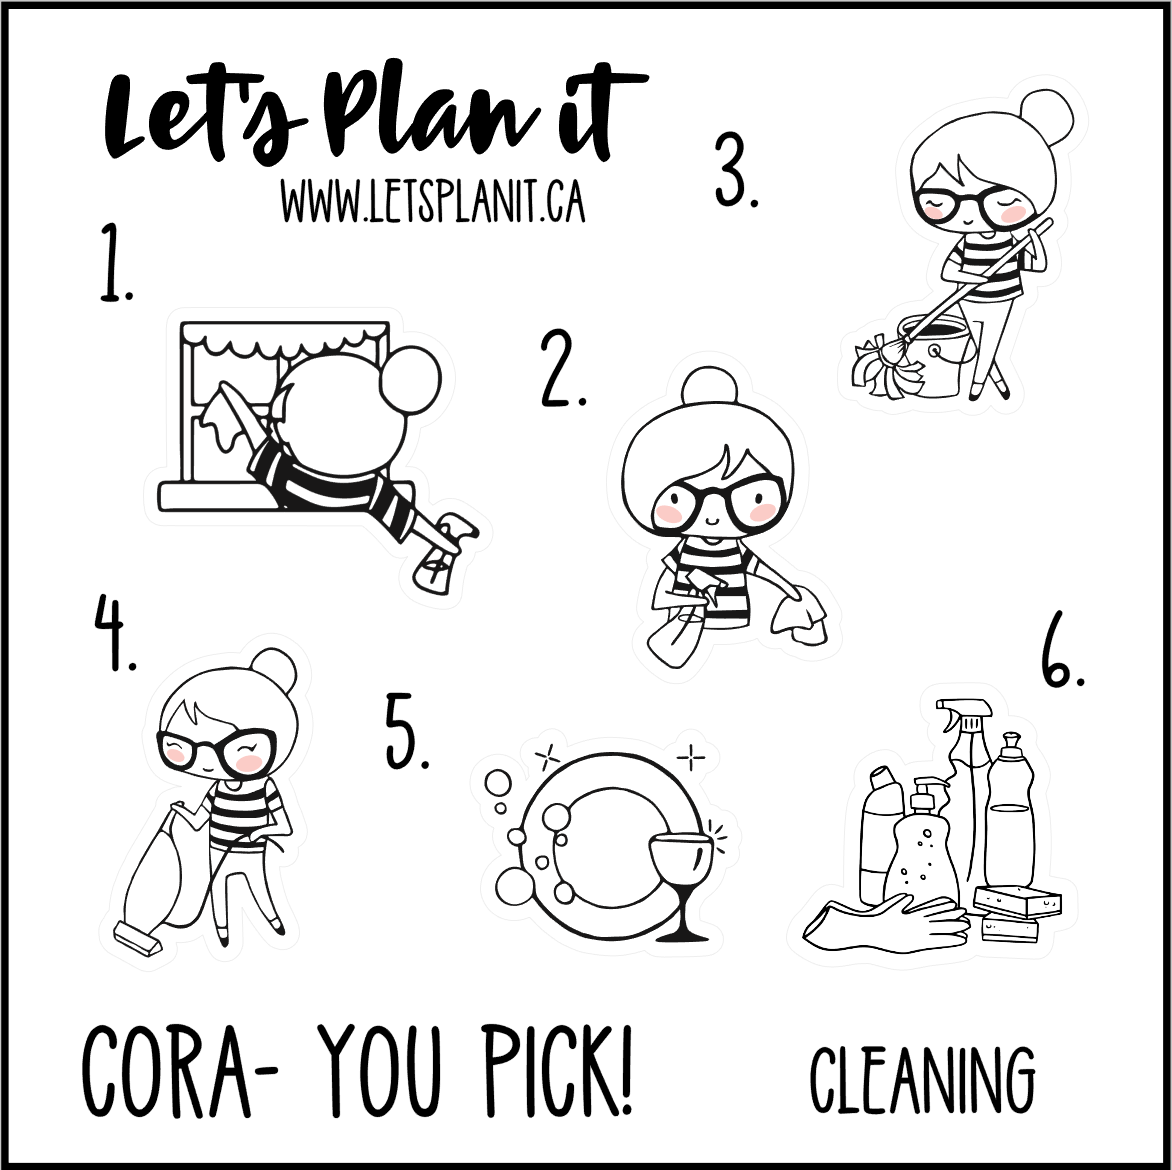 Cora-u-pick- Cleaning